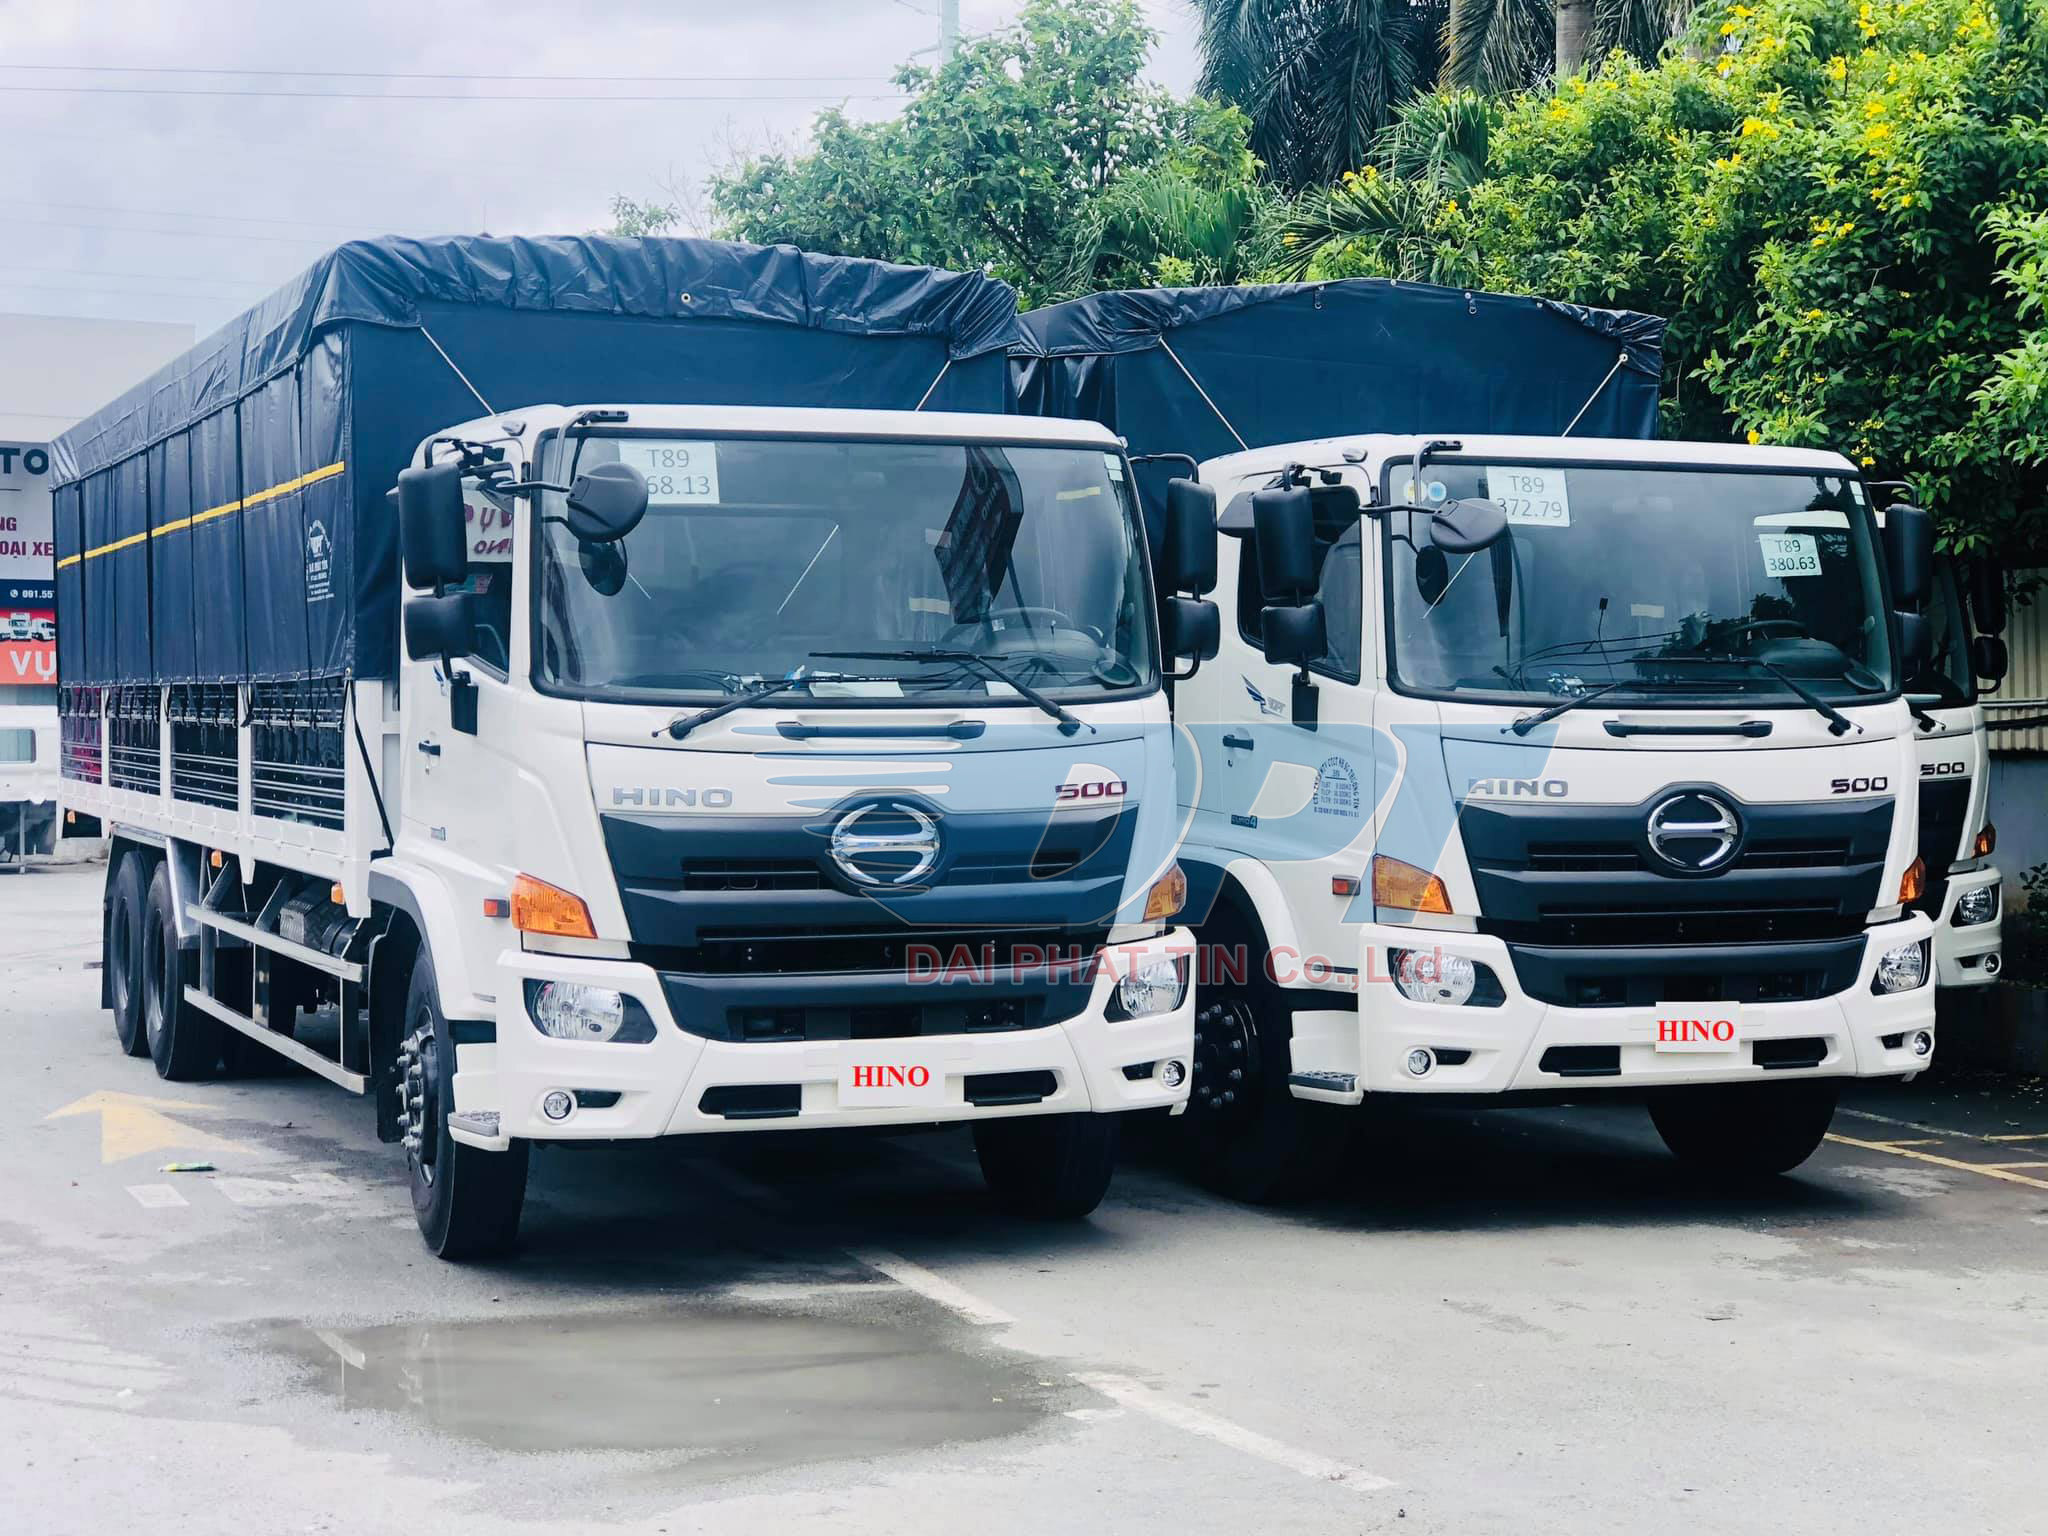 XE TẢI HINO FL8JW7A 15 TẤN THÙNG MUI BẠT - ĐẠI LÝ XE TẢI 3S CỦA ...: Xe tải Hino 15 tấn Với khả năng chất lượng vượt trội và sự tiện lợi trong việc vận chuyển hàng hóa, chiếc xe tải Hino FL8JW7A 15 tấn thùng mui bạt sẽ giúp bạn dễ dàng hoàn thành tất cả các nhiệm vụ vận chuyển trong thời gian ngắn nhất và an toàn nhất. Đặc biệt, với đại lý xe tải 3S, bạn sẽ được hỗ trợ bảo dưỡng và sửa chữa xe tải một cách dễ dàng và thuận tiện hơn bao giờ hết.